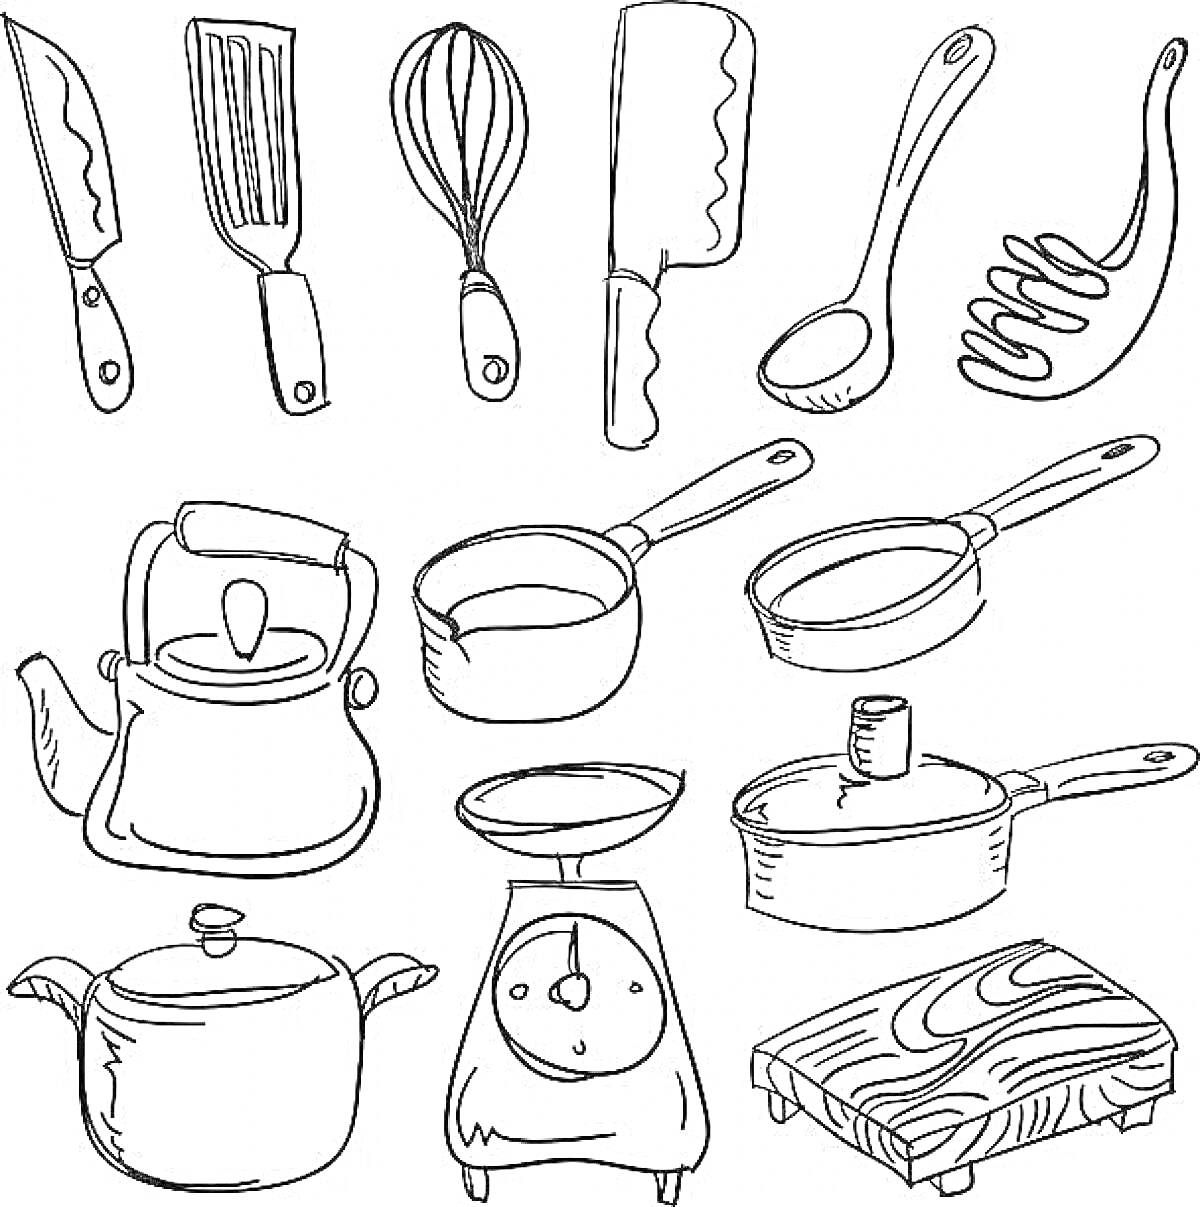 Кухонная посуда: нож, лопатка, венчик, топорик для мяса, ложка, половник, чайник, ковш, сковорода, кастрюля, терка, доска для резки